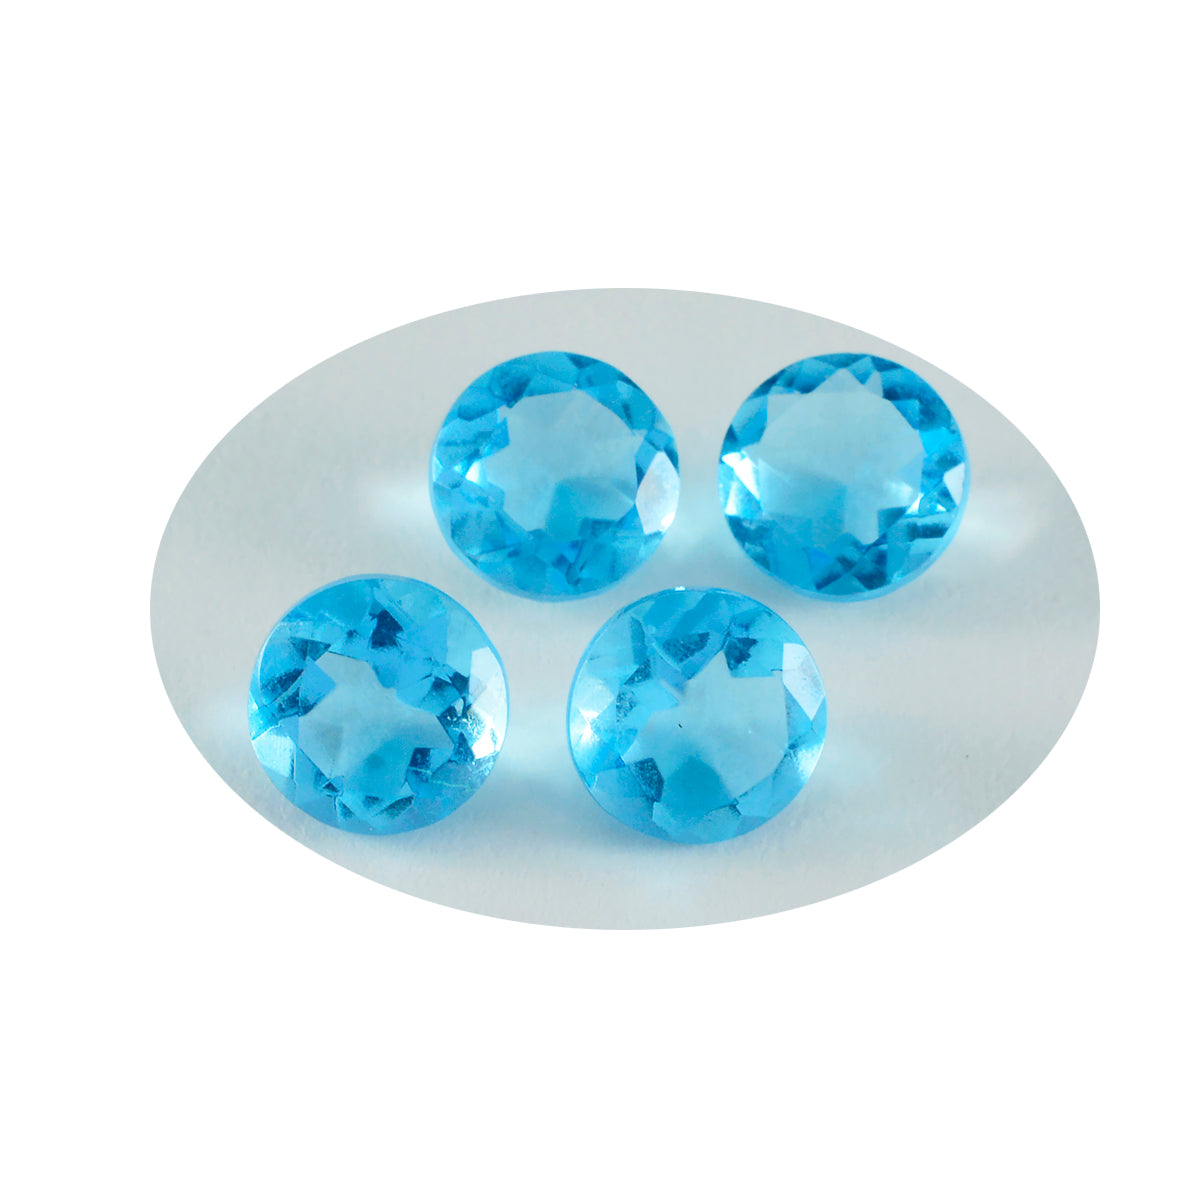 riyogems 1шт синий топаз cz ограненный 14x14 мм круглая форма качество A1 отдельные драгоценные камни